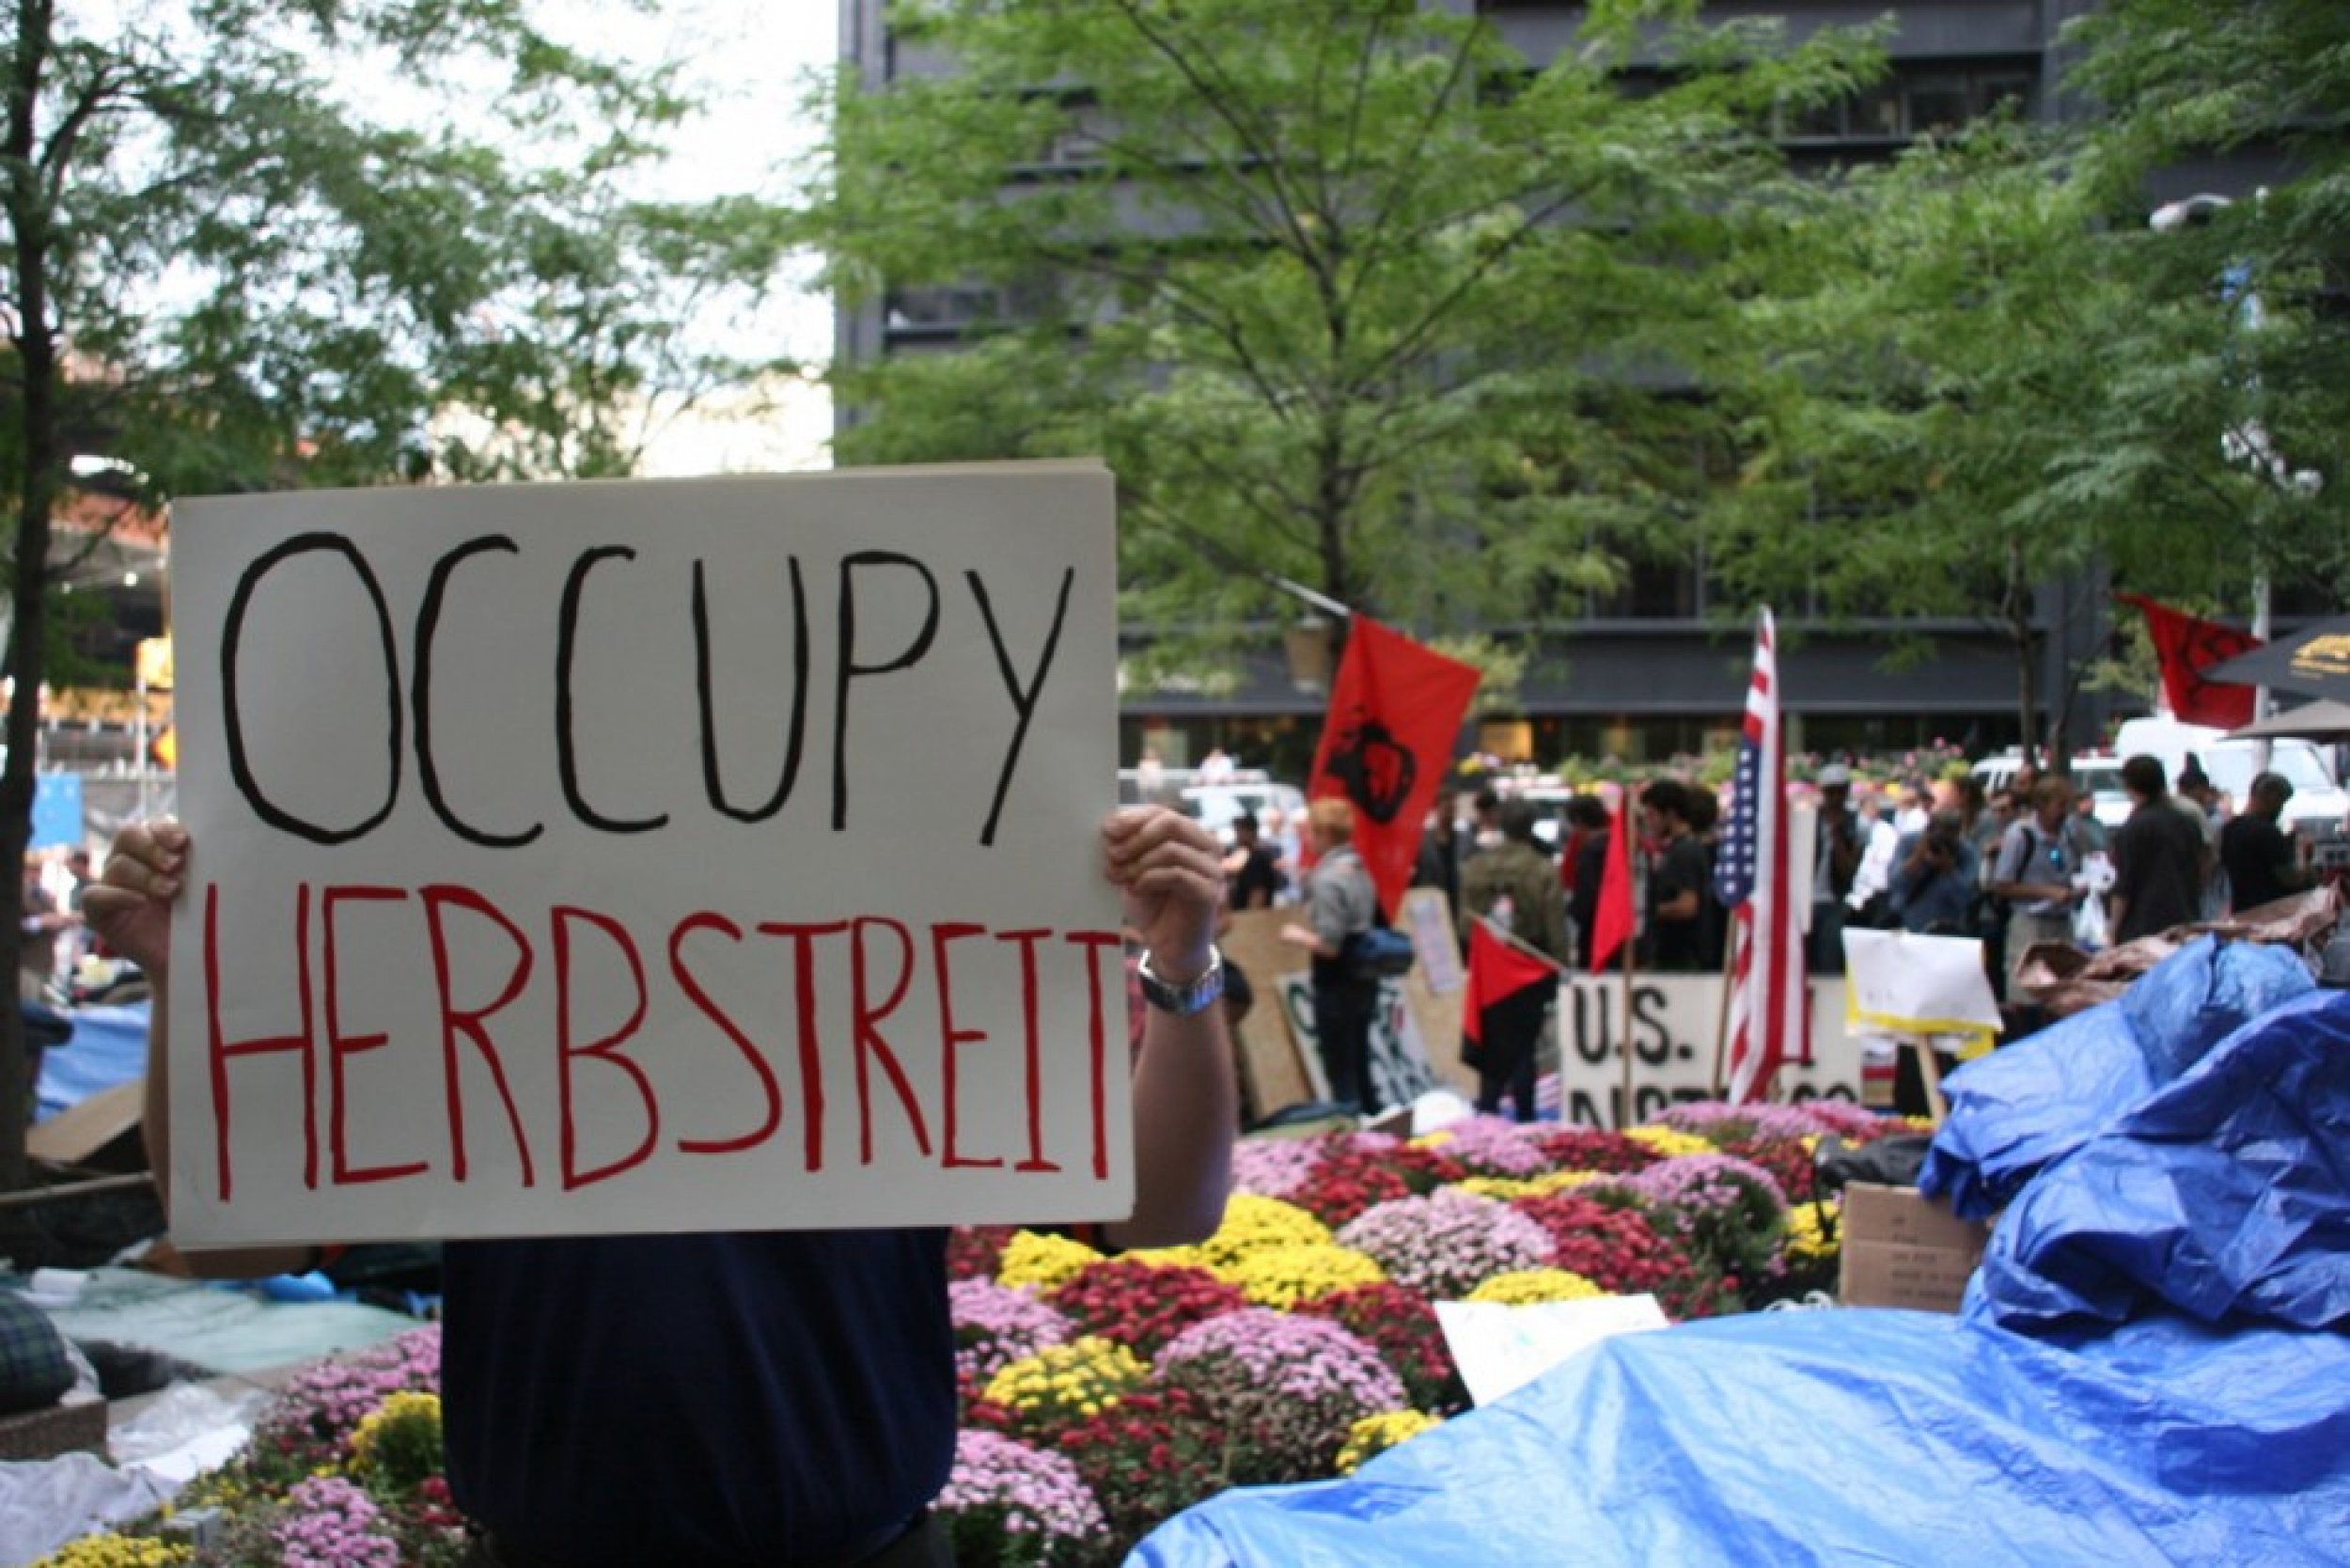 Occupy Herbstreit